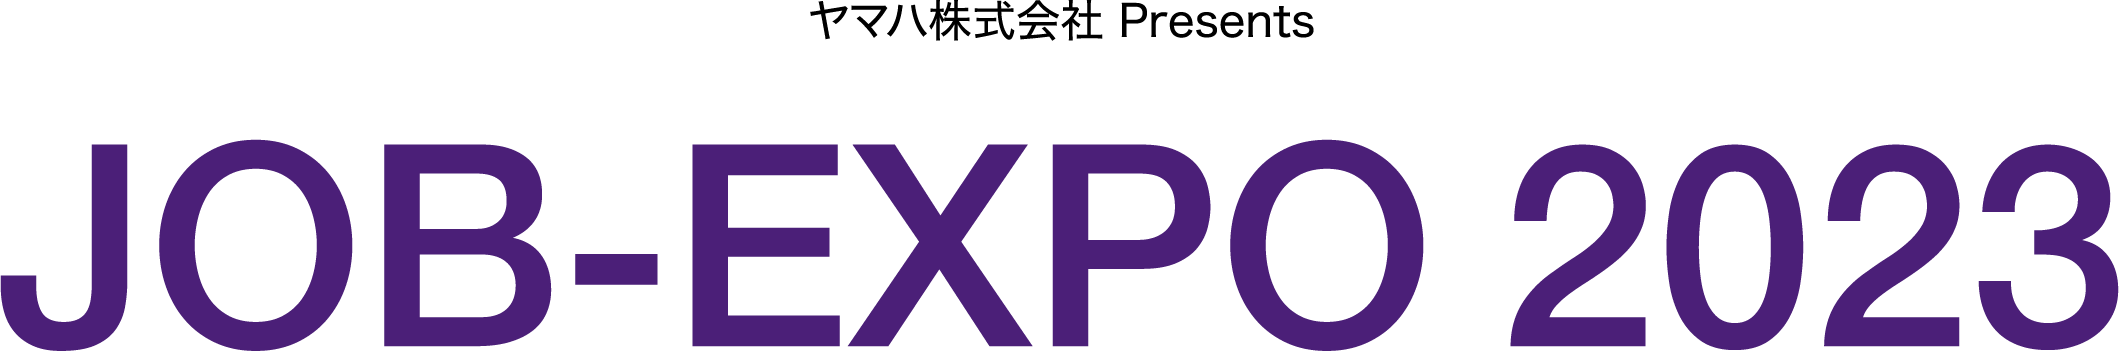 ヤマハ株式会社 Presents Pre JOB-EXPO 2023